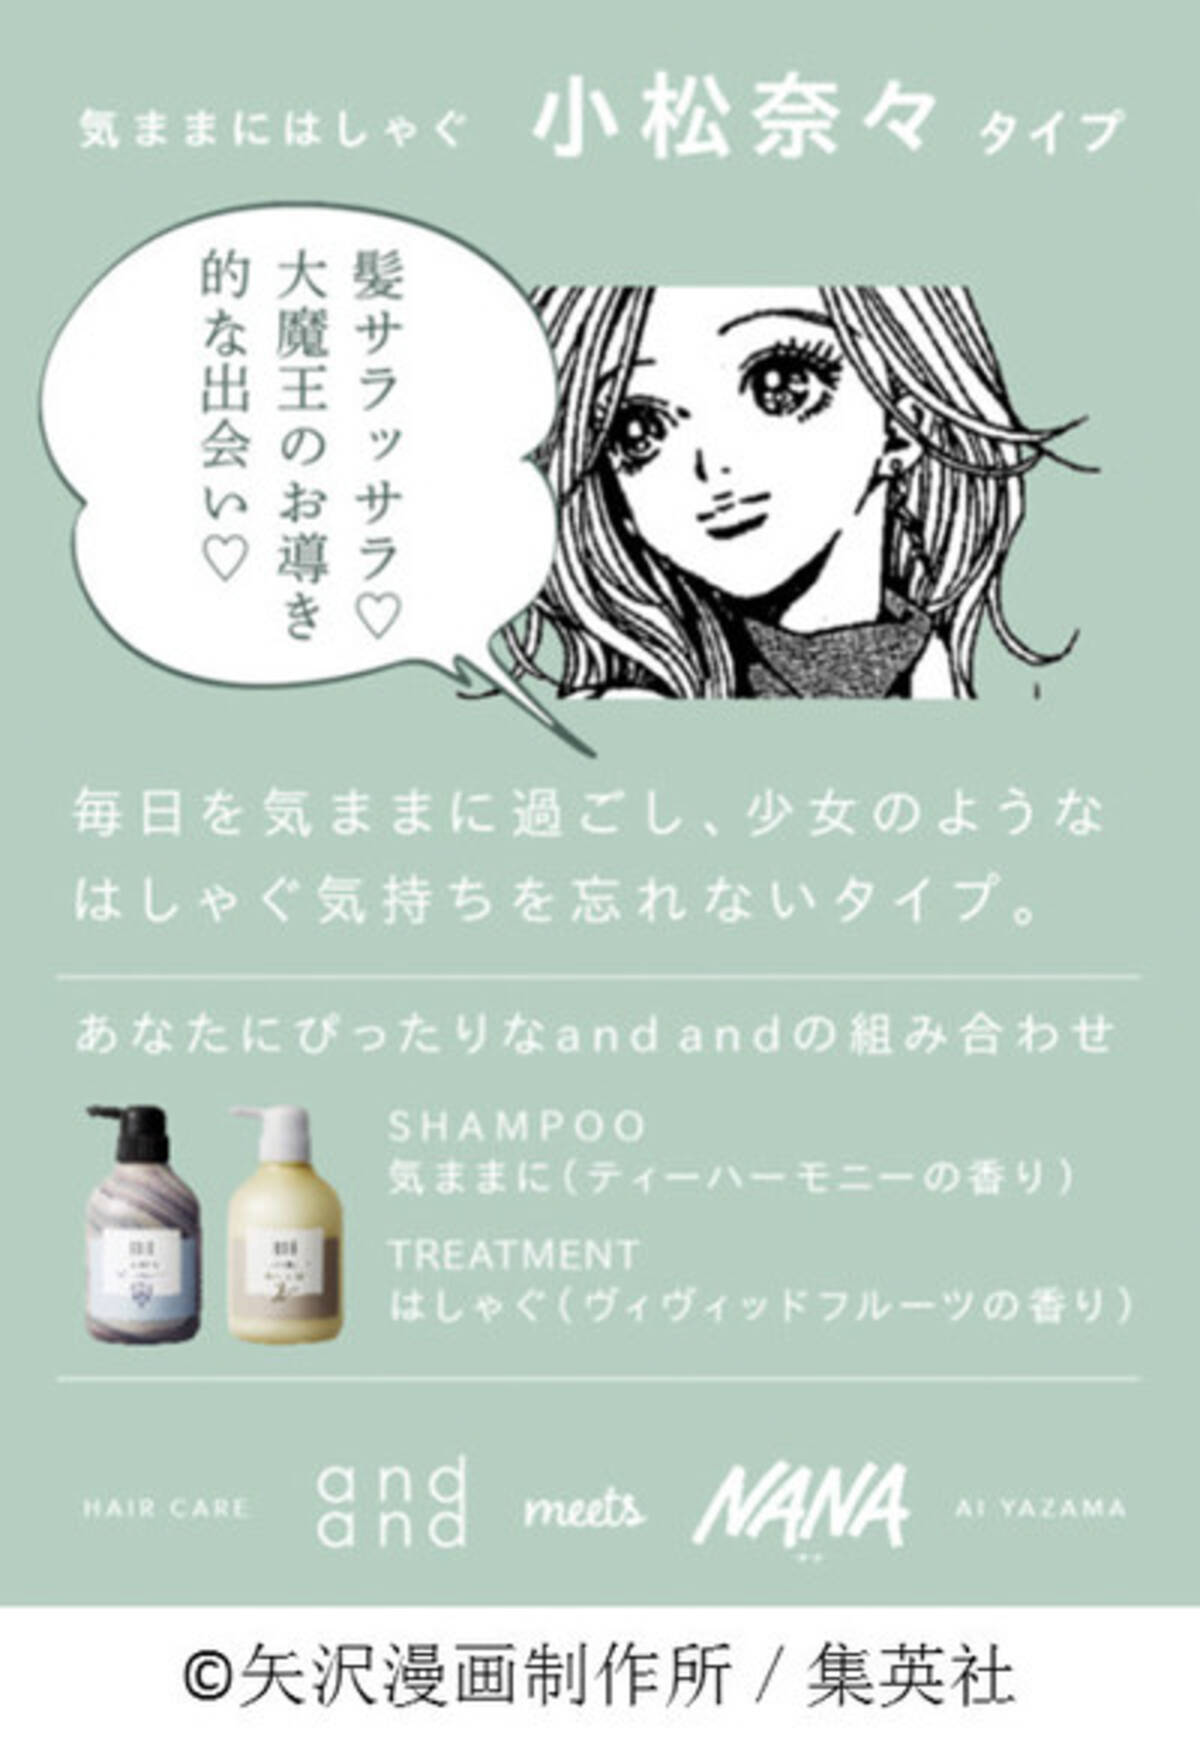 7つの質問から漫画 Nana のキャラタイプを診断 花王のヘアケアブランドが展開 19年11月1日 エキサイトニュース